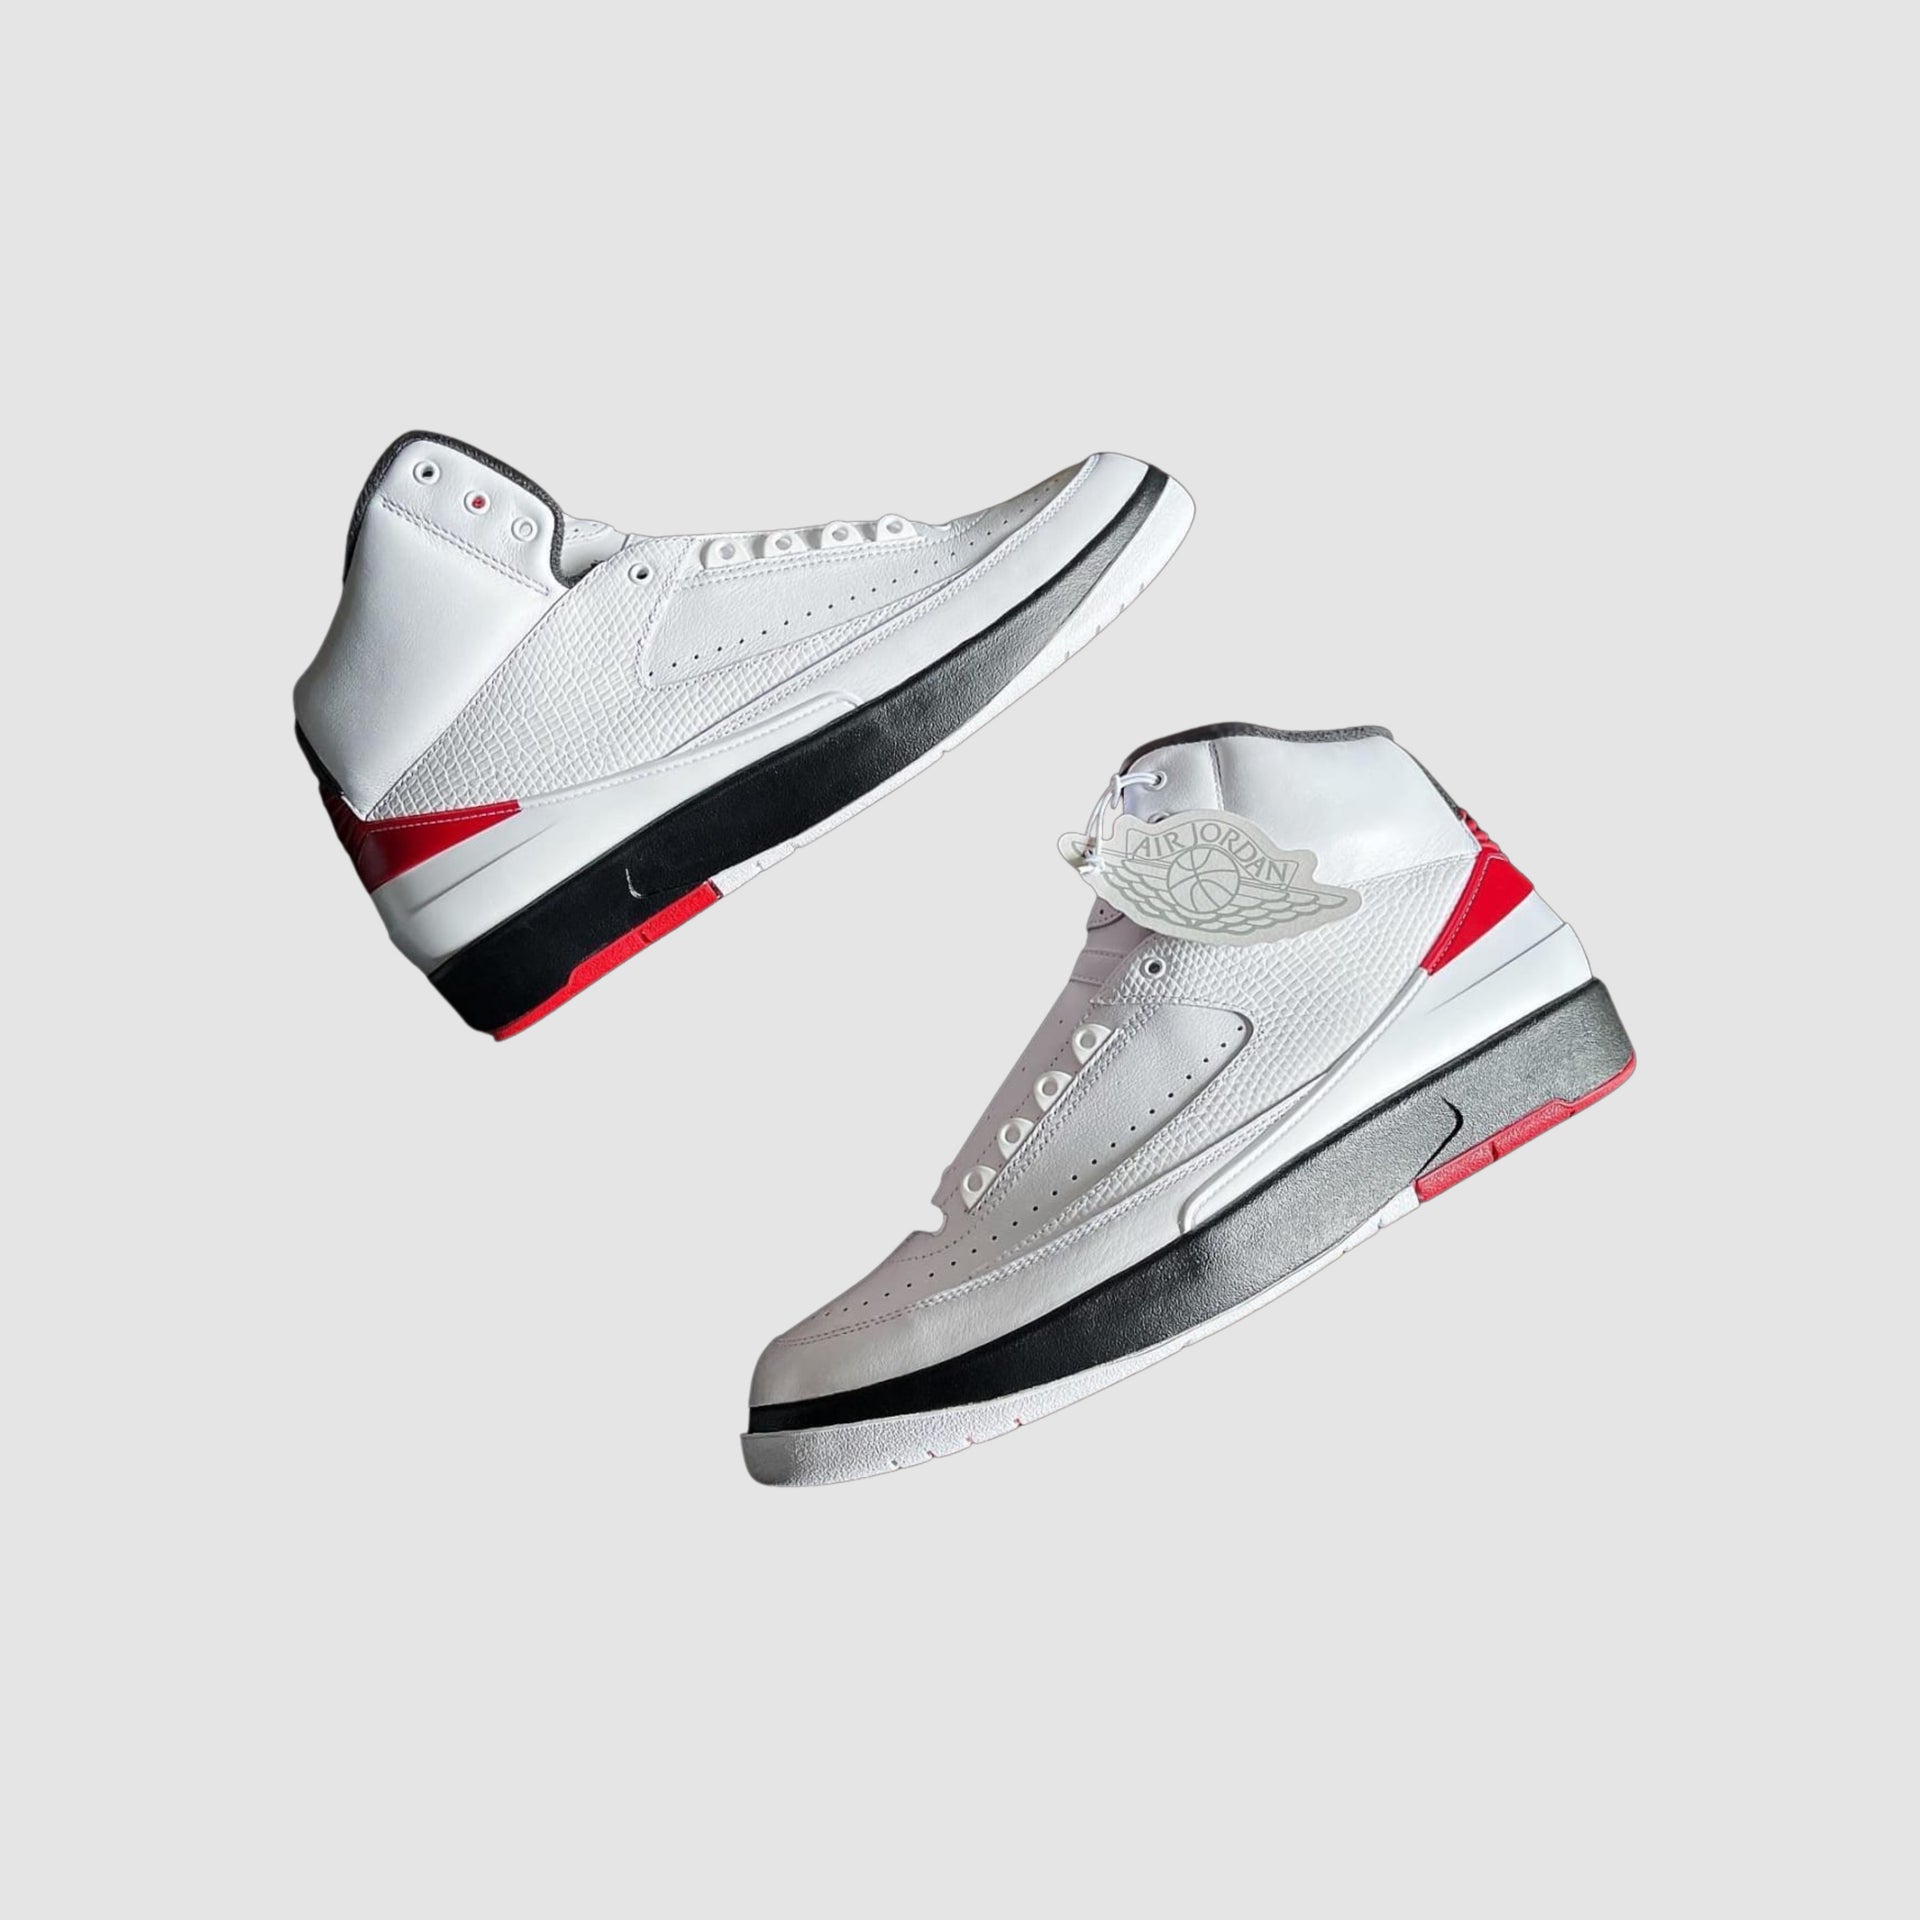 Air Jordan 2 OG “Chicago”